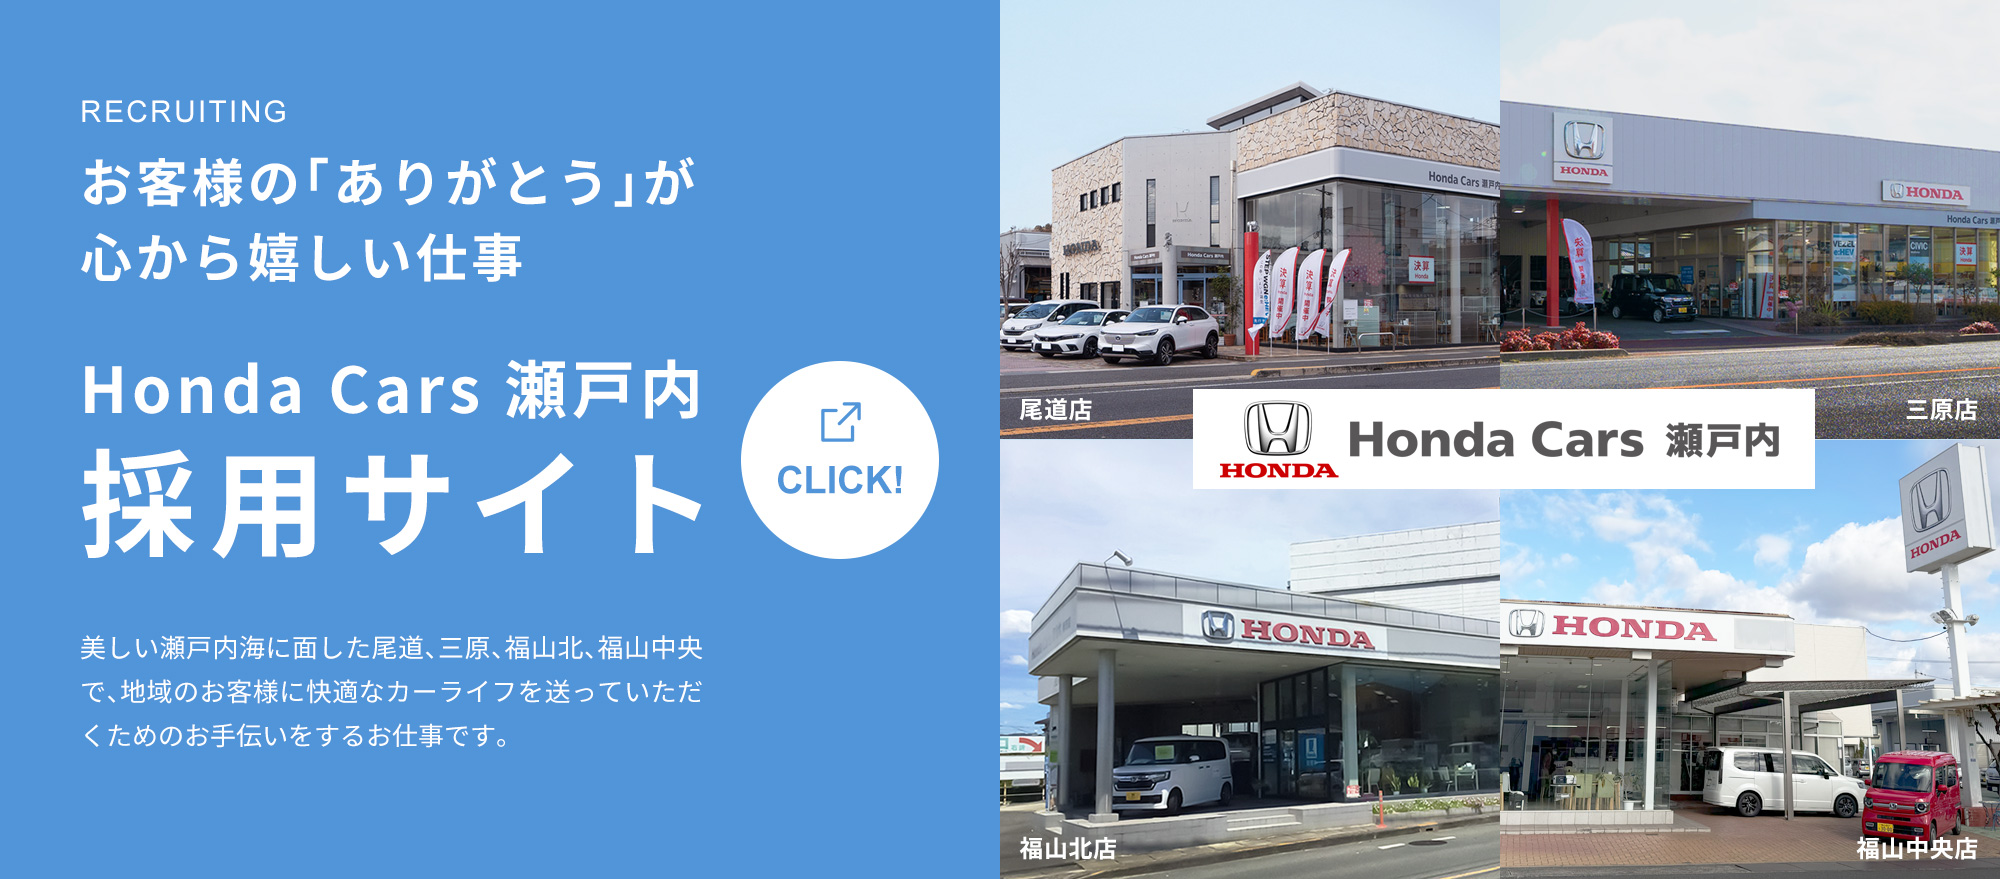 お客様の「ありがとう」が心から嬉しい仕事・Honda Cars瀬戸内採用サイト